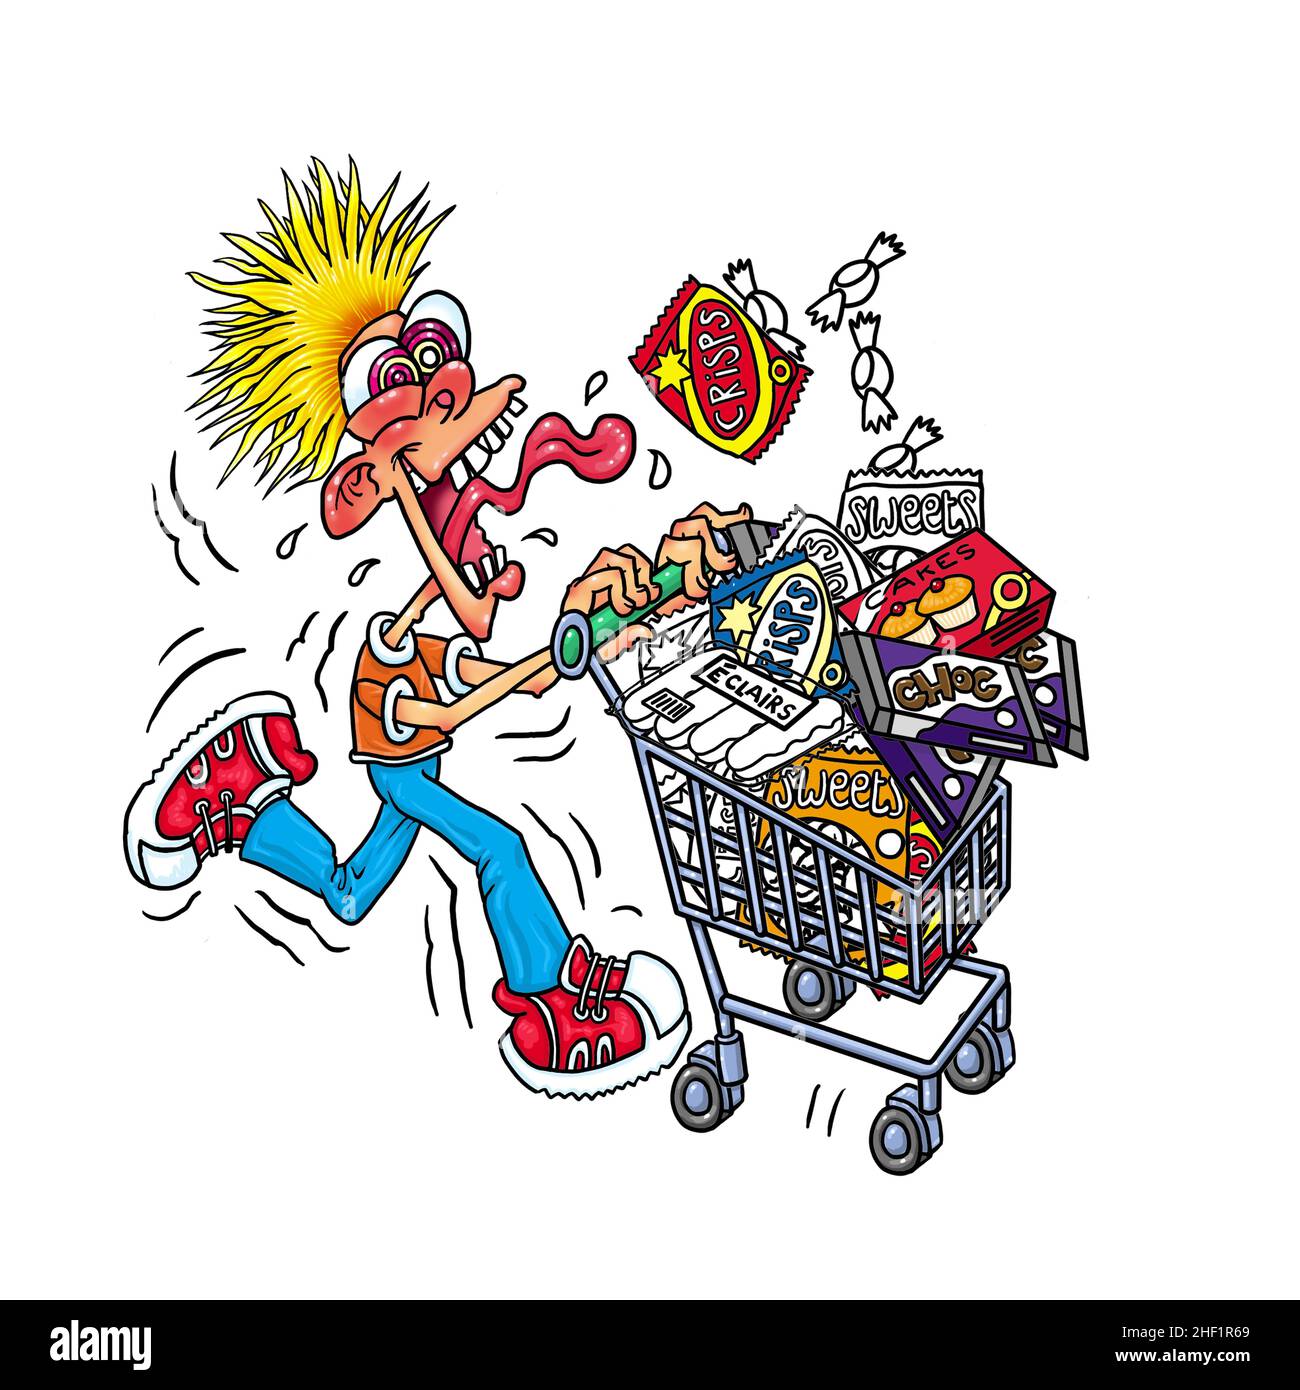 Lustige Cartoon-Kunst zeigt aufgeregt Shopper mit Shopping-Trolley / Warenkorb der Belohnung Lebensmittel: Chips, Kuchen, Süßigkeiten, Snacks Supermarkt Dash, Schnäppchen, Leckereien Stockfoto